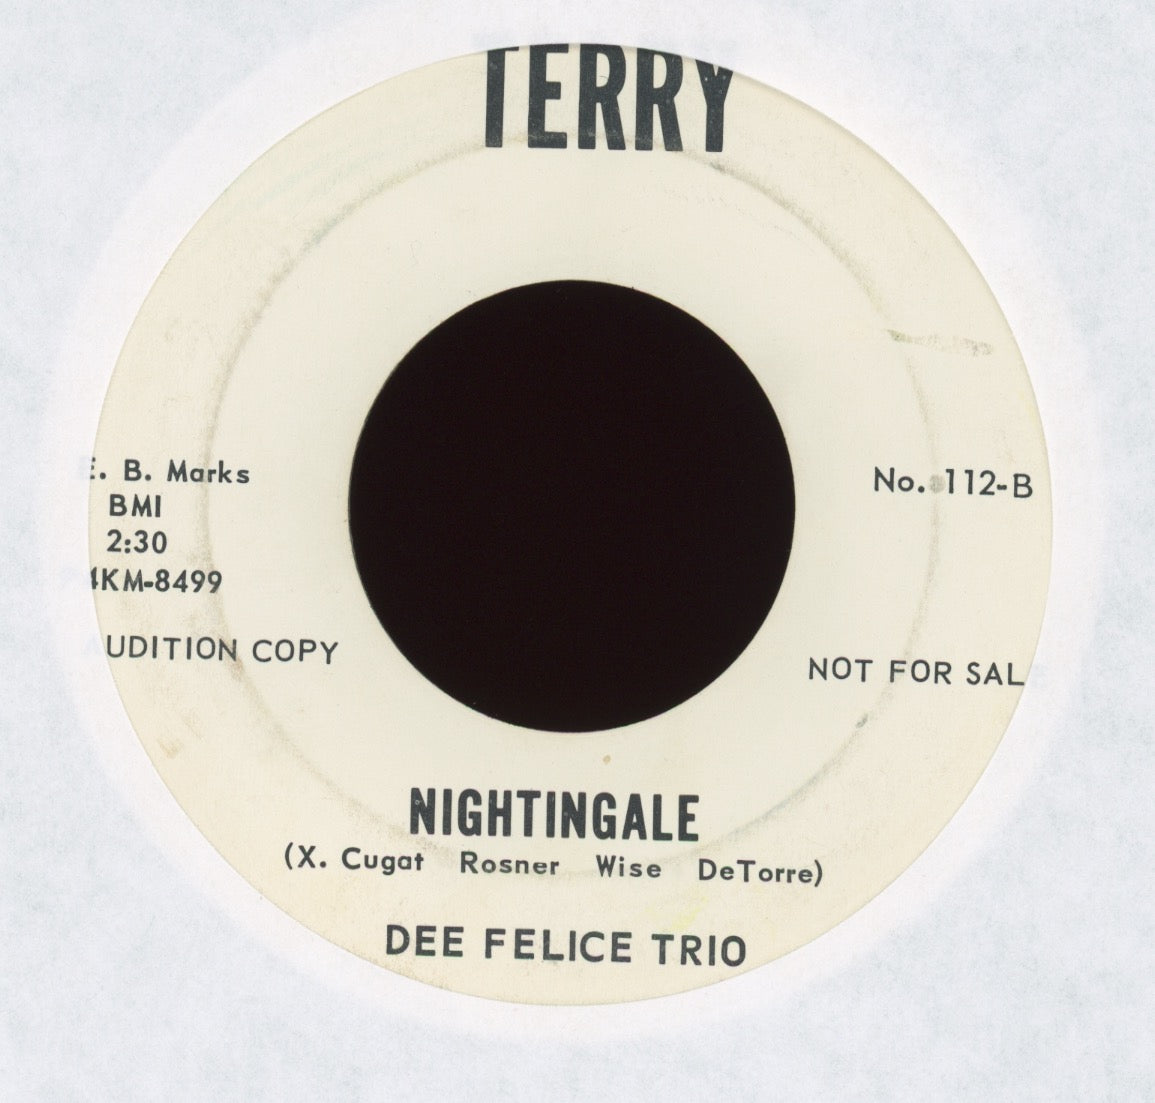 Dee Felice Trio - Nightingale on Terry Promo